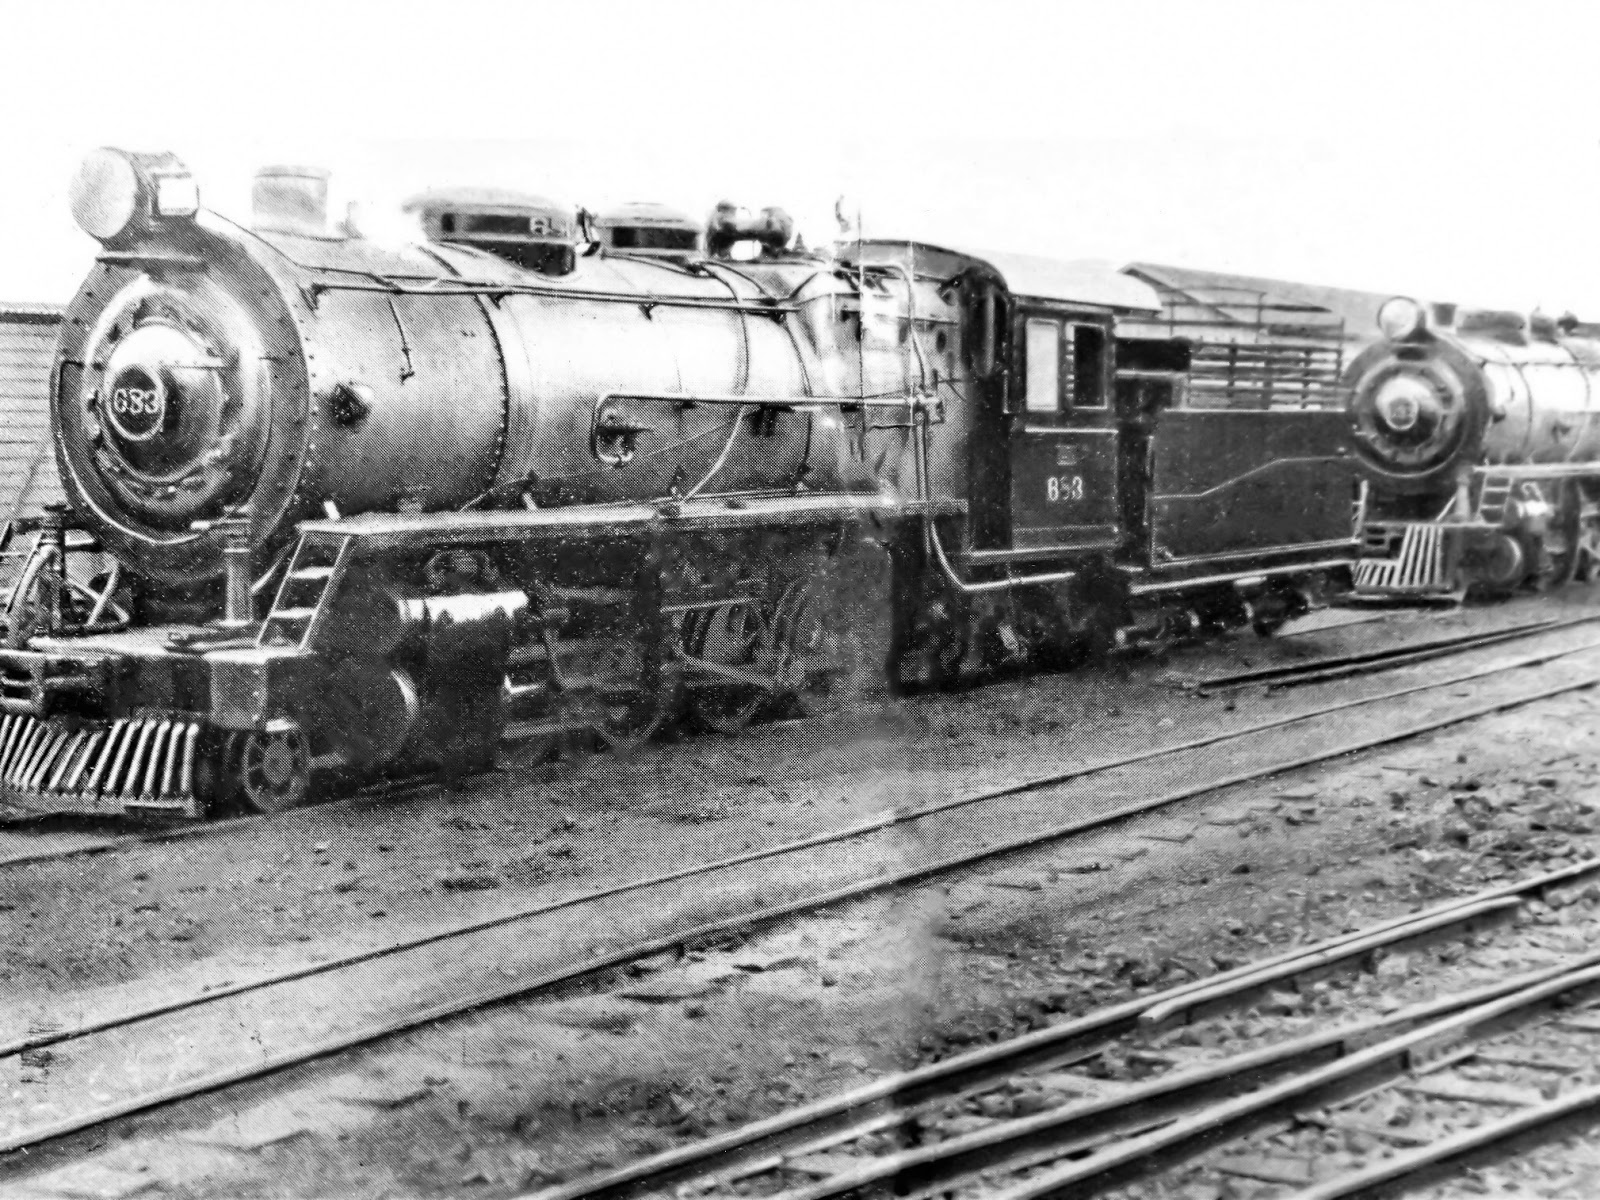 Locomotiva 683 - Década de 1950